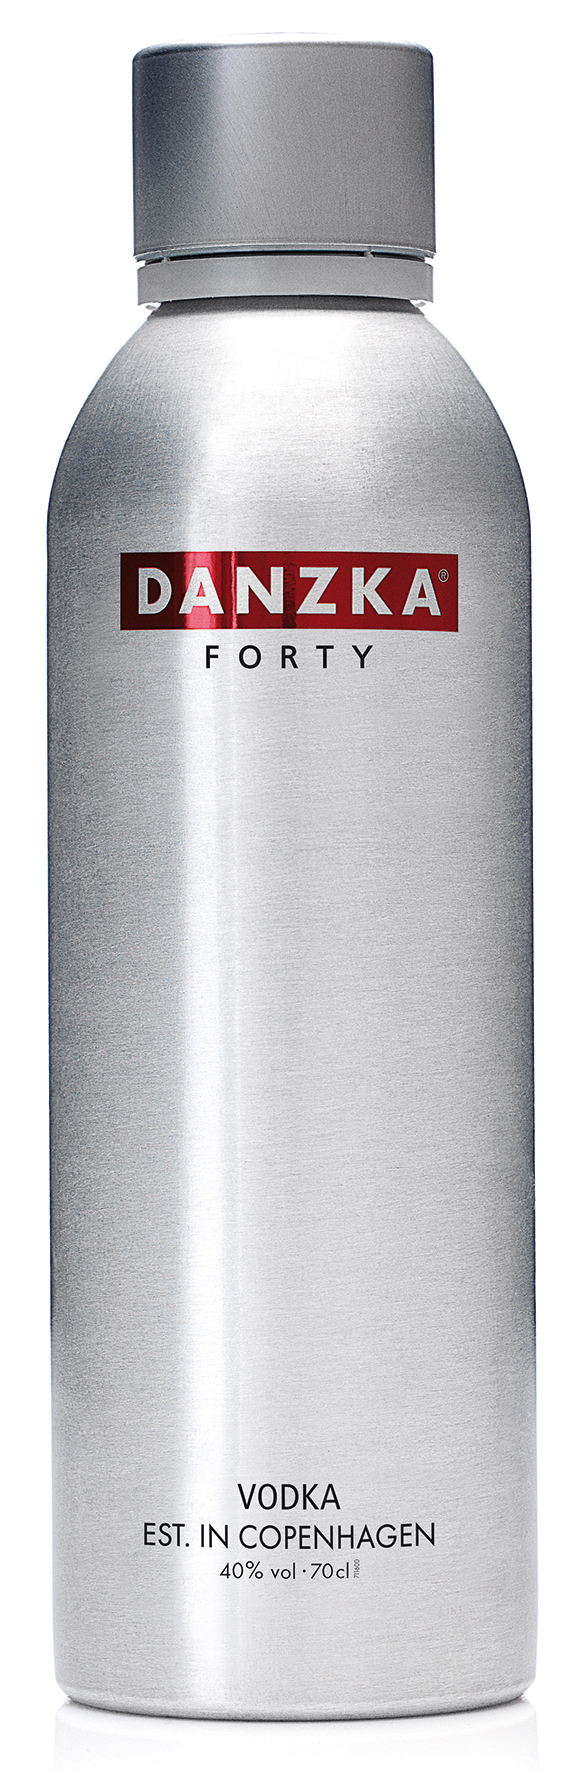 Danzka Premium Vodka in Aluminiumflasche aus Copenhagen 0,7l 40%vol.